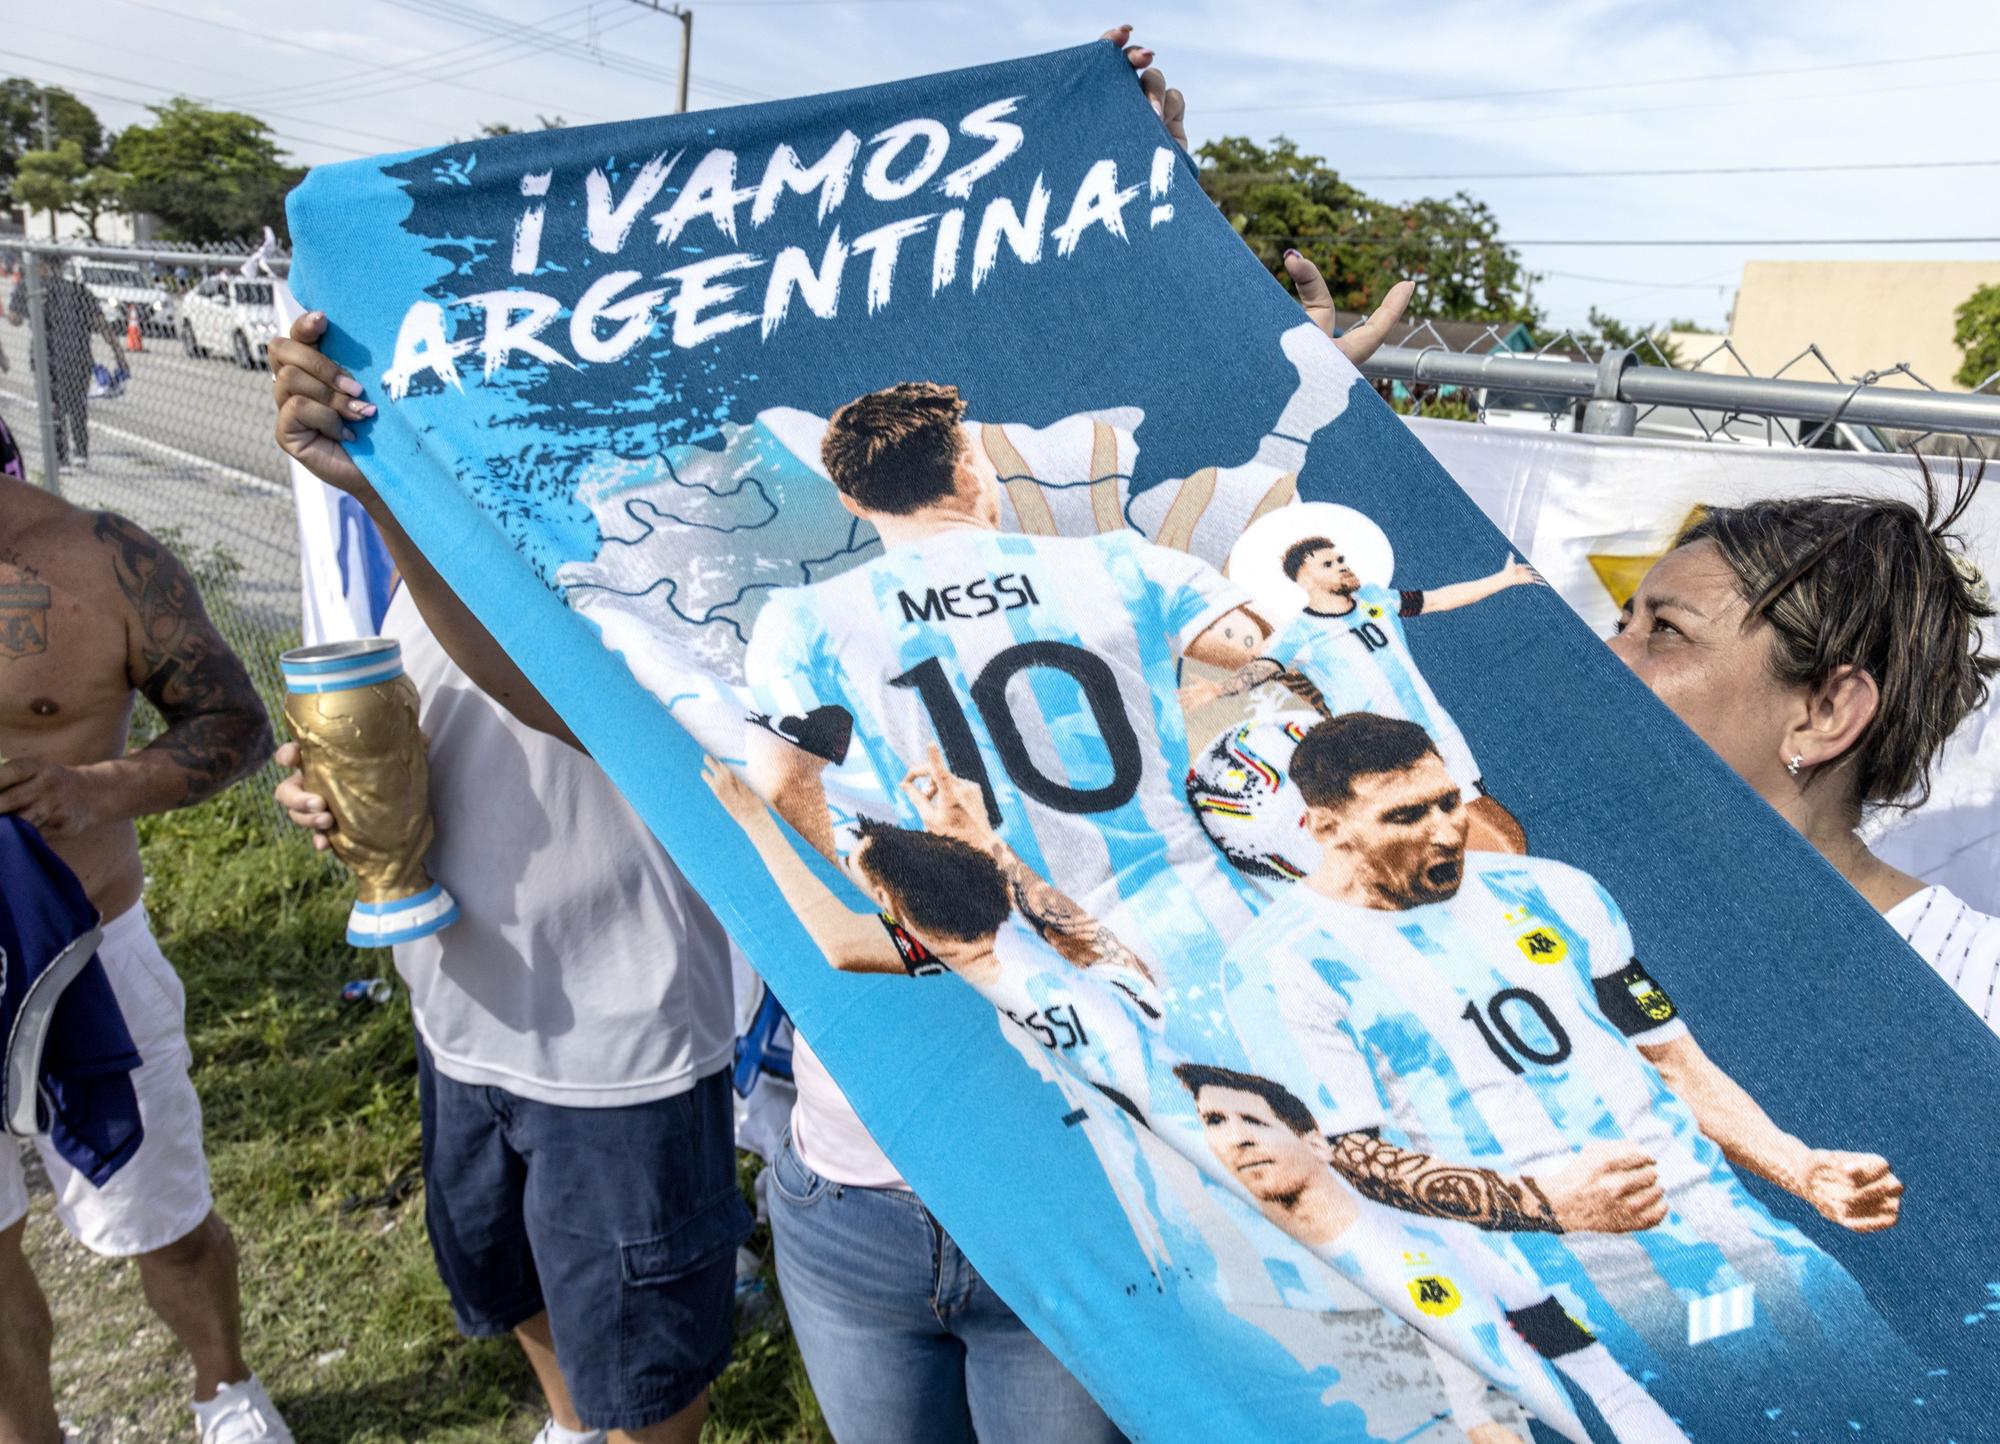 La presentació de Messi amb l'Inter de Miami en imatges